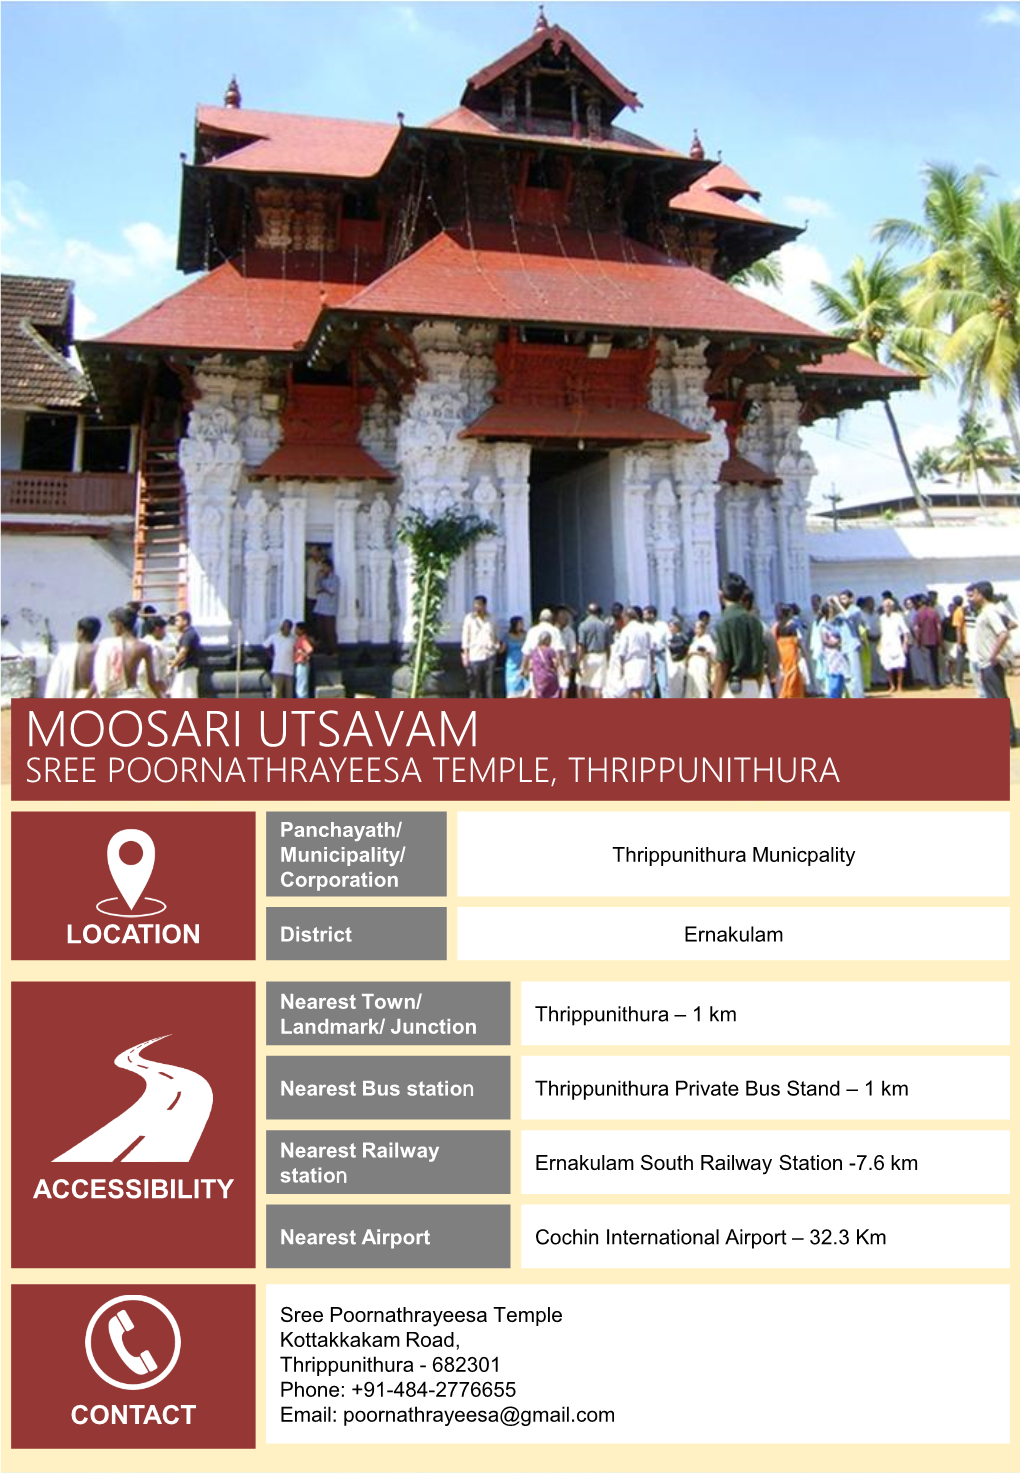 Moosari Utsavam Sree Poornathrayeesa Temple, Thrippunithura